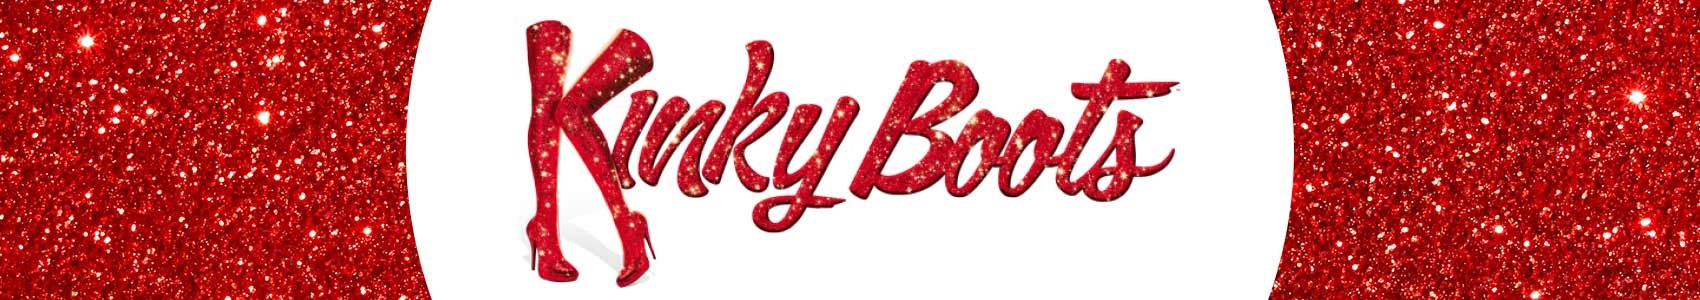 Kinky Boots Stellar Cast Announced